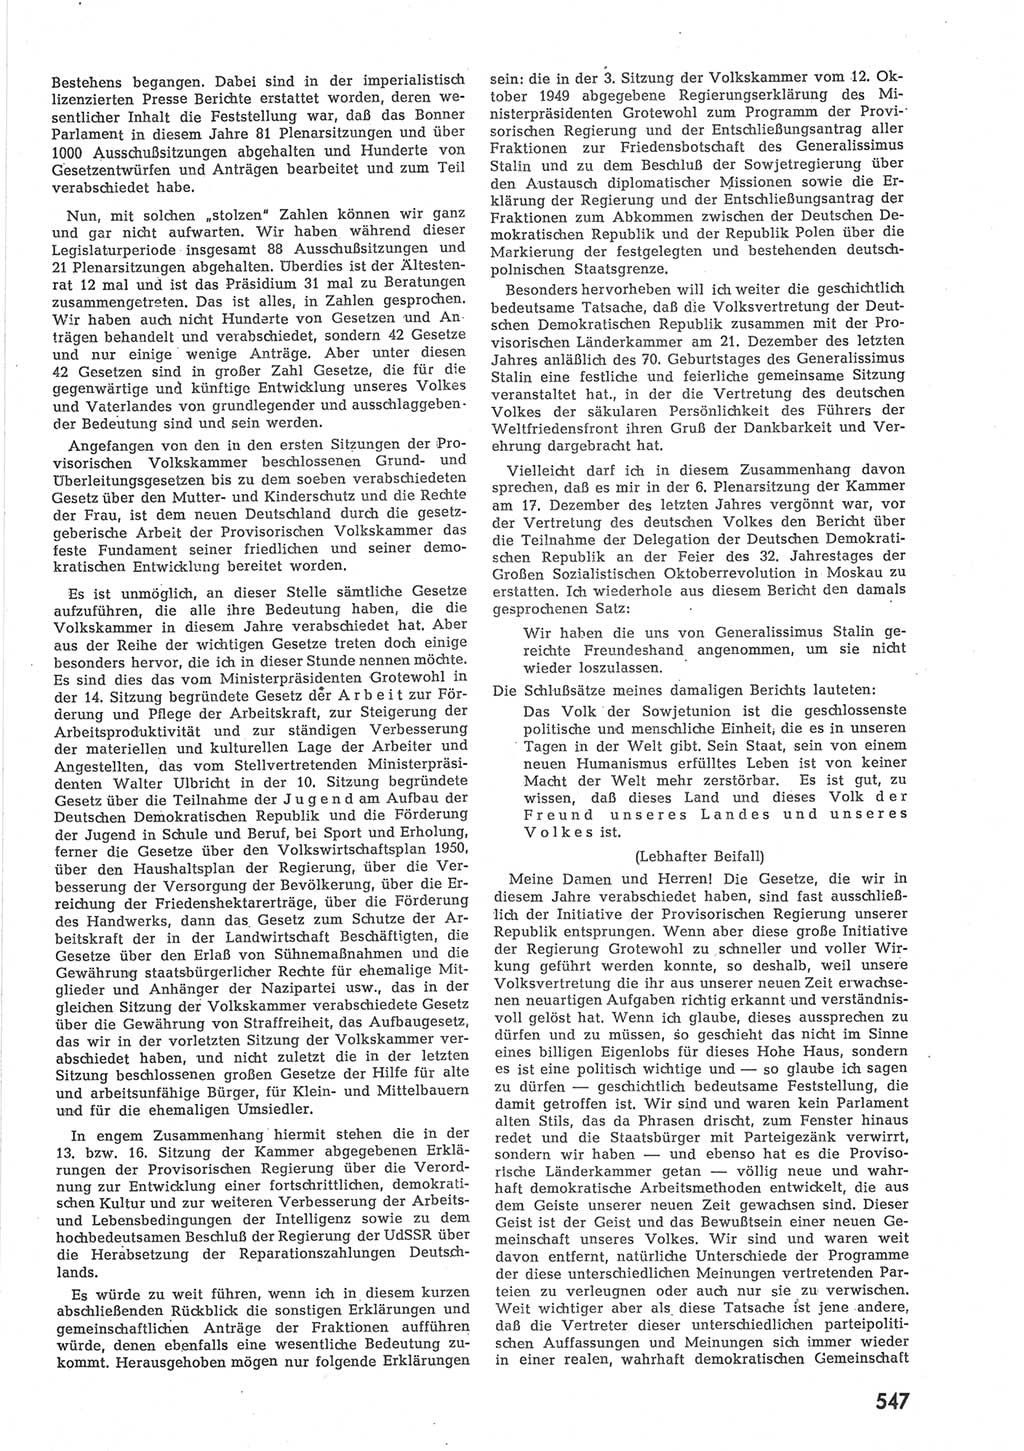 Provisorische Volkskammer (VK) der Deutschen Demokratischen Republik (DDR) 1949-1950, Dokument 565 (Prov. VK DDR 1949-1950, Dok. 565)